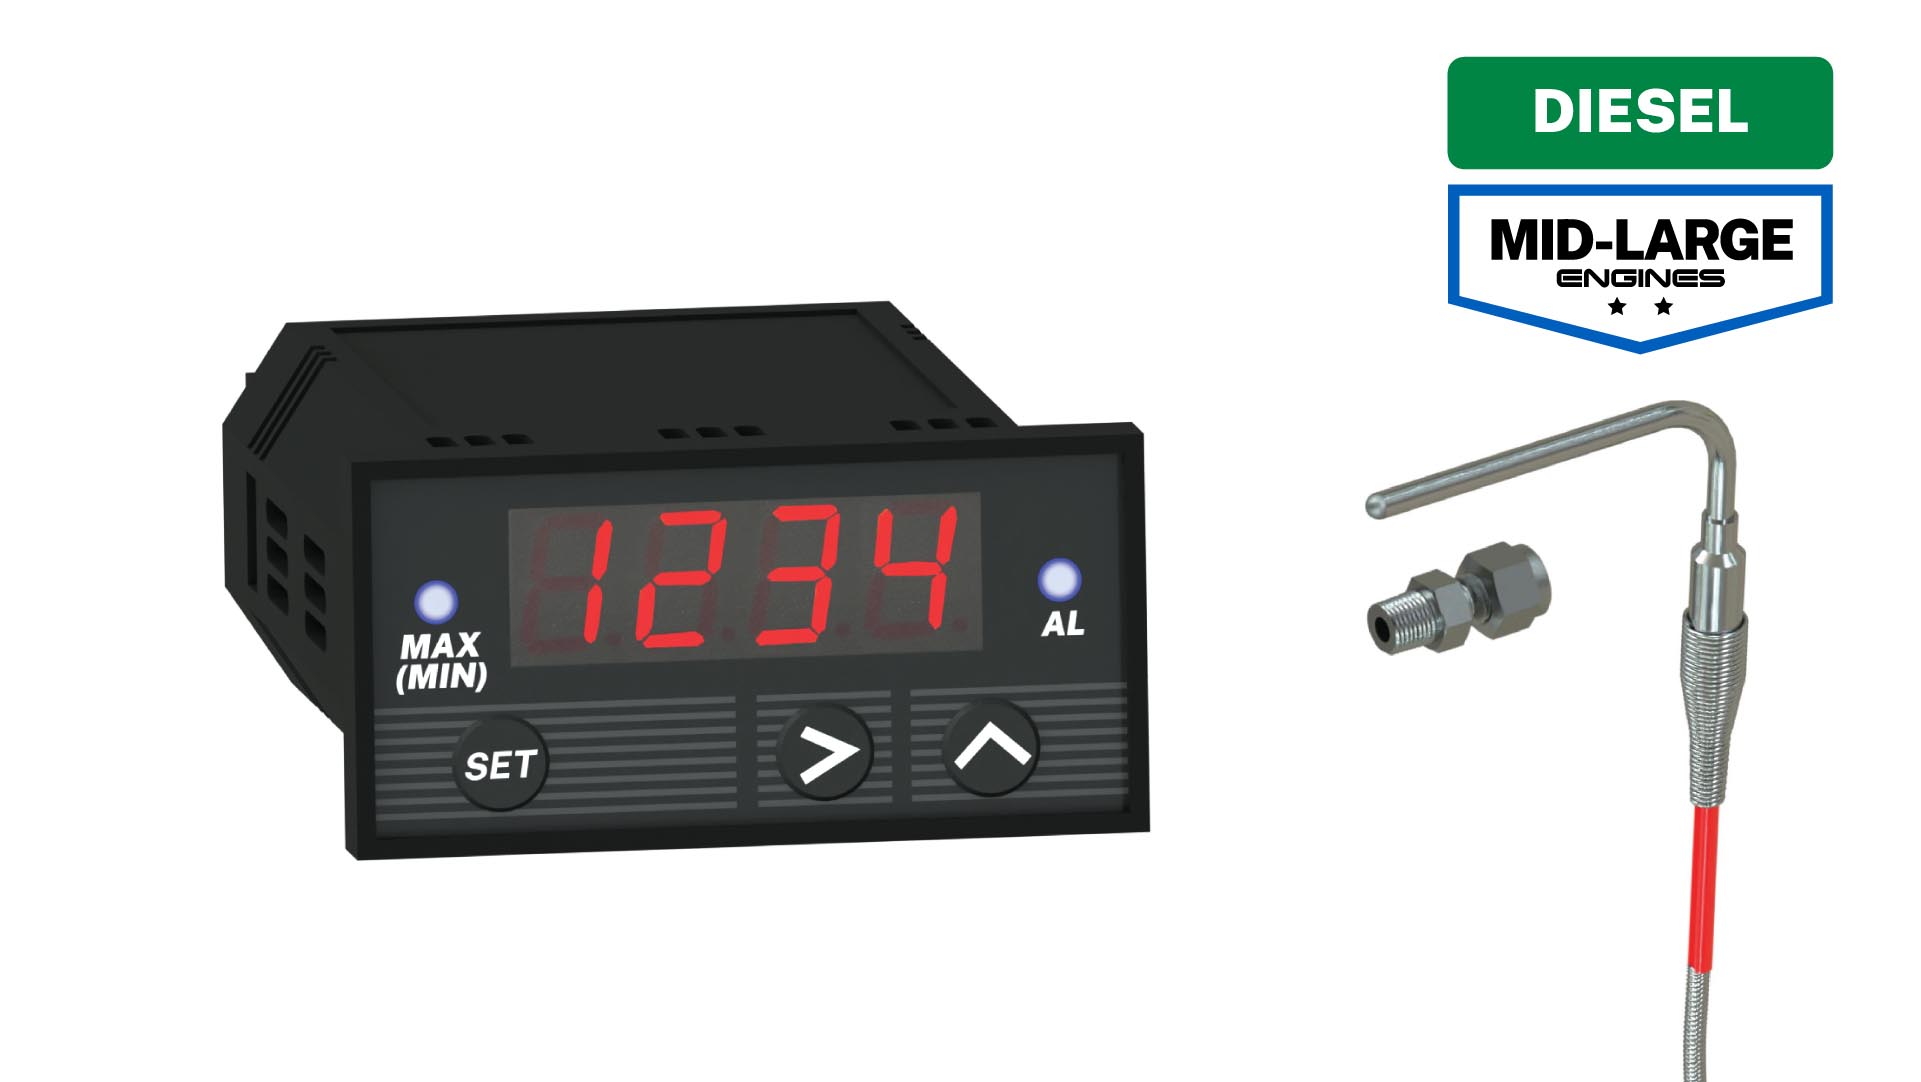 EGT Digital PMD1XT Pyrometer Gauge + Probe Kit - Diesel Commercial Industrial Series DP